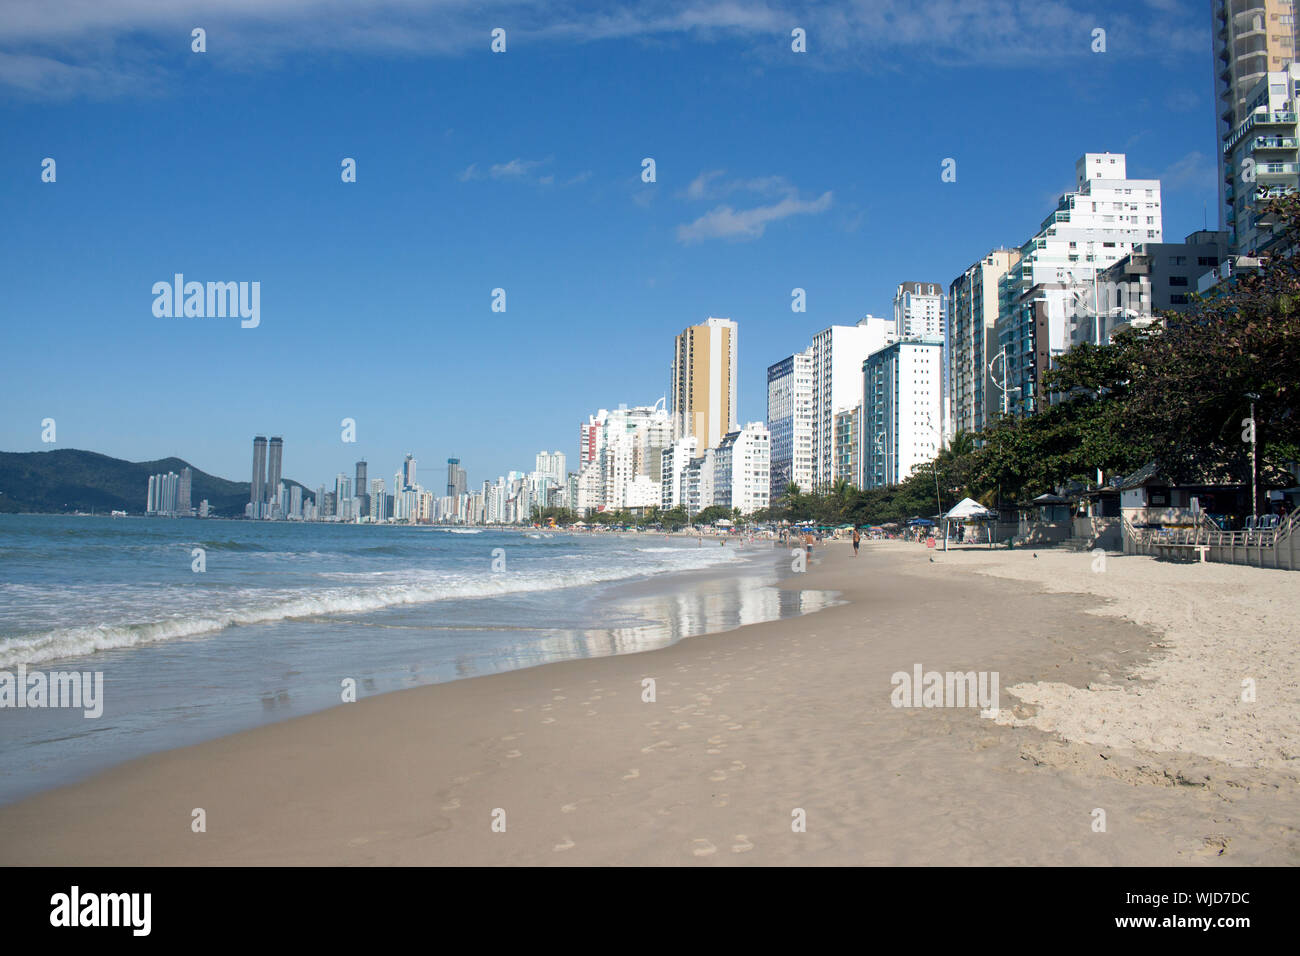 Balneario Camburiú stellt die zweitgrößte Vertikalisierung in Brasilien mit 57% der besetzten Haushalte, vertikal. S. Catarina - Brasilien Stockfoto